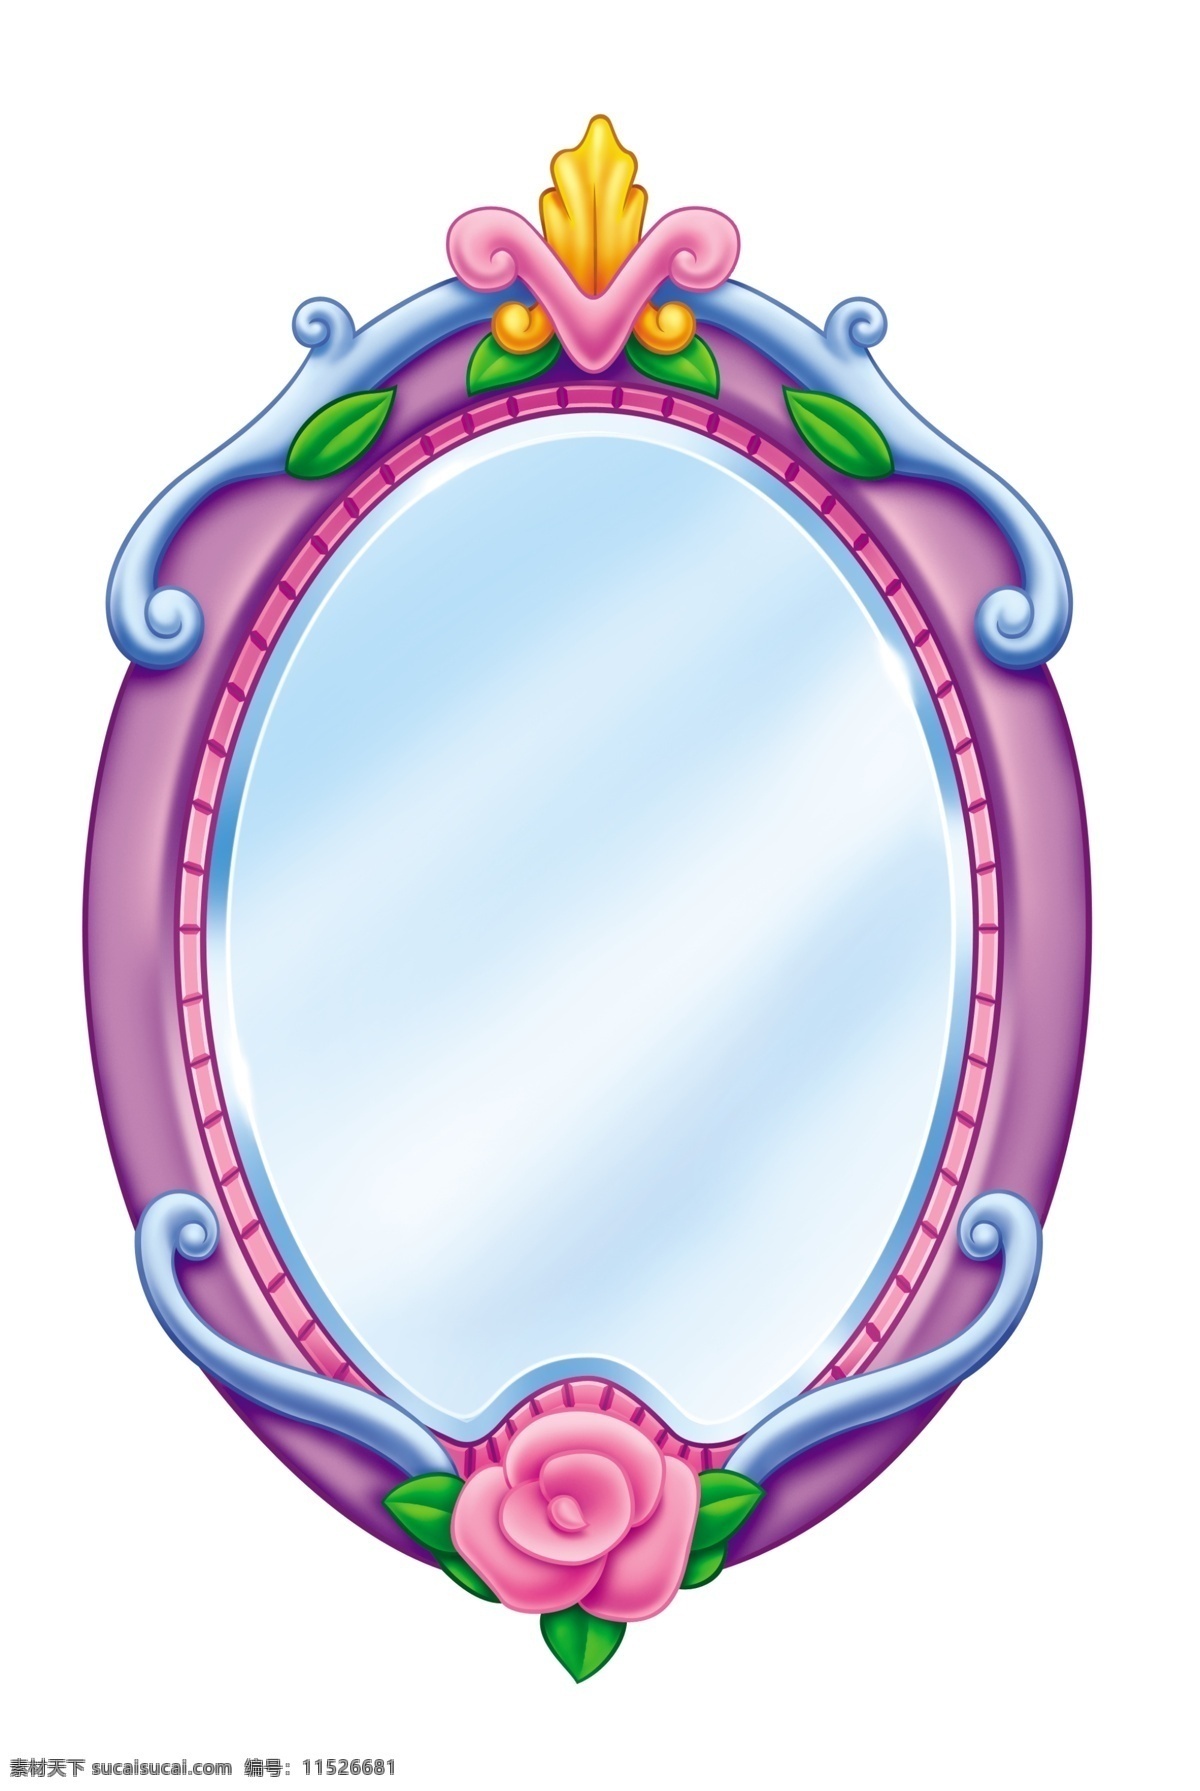 可爱 卡通 公主 镜子 玫瑰 欧式镜子